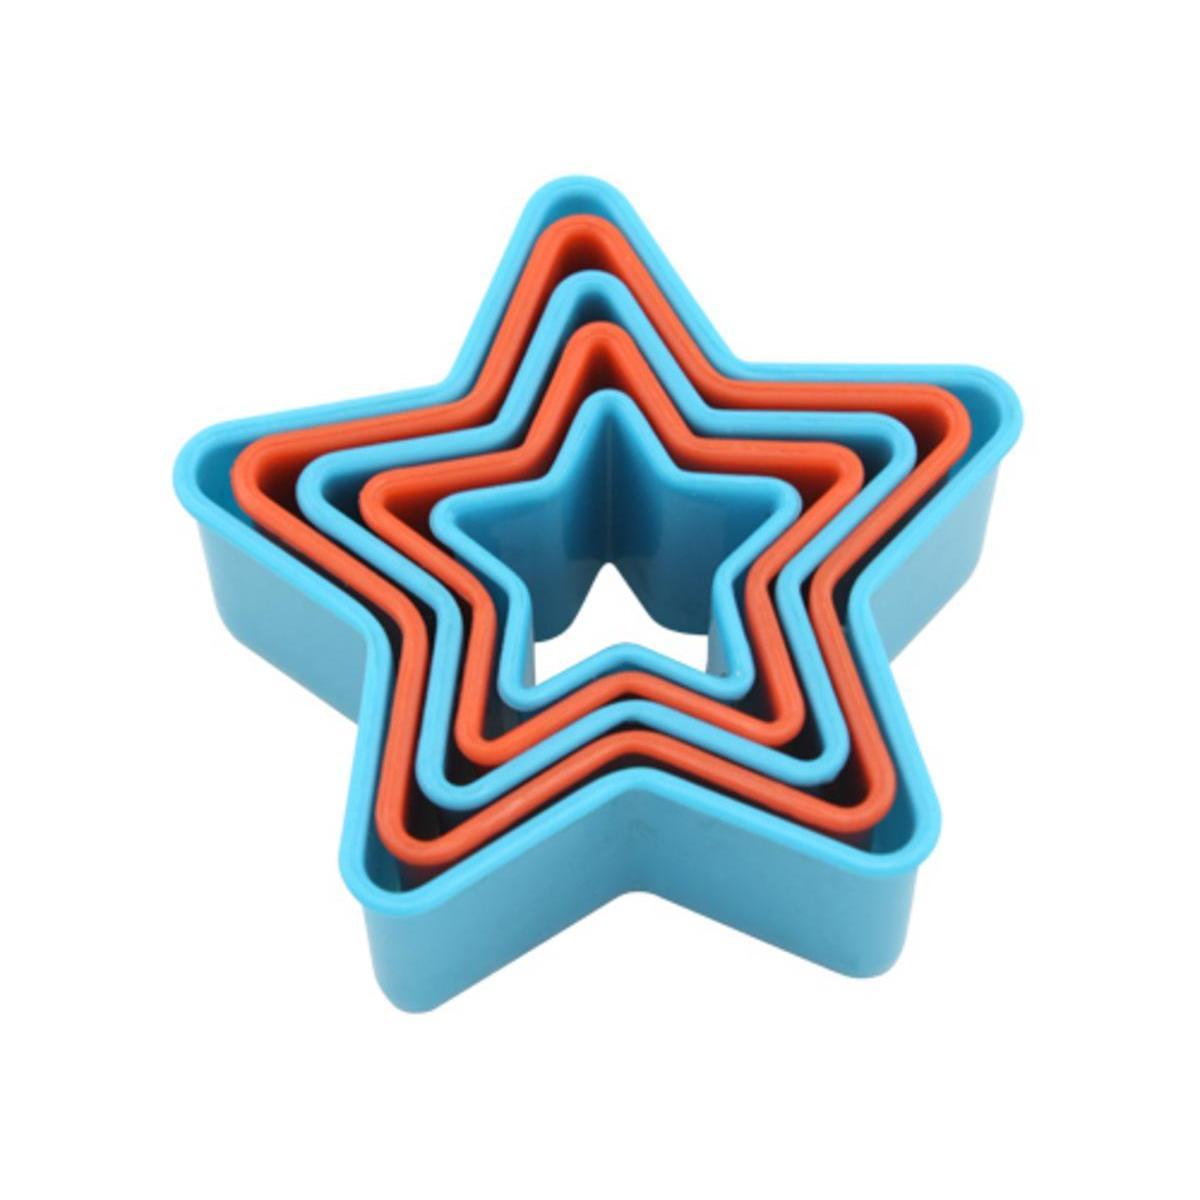 Emporte-pièces étoile - Plastique - 4,4 x 9,9 cm - Bleu et orange